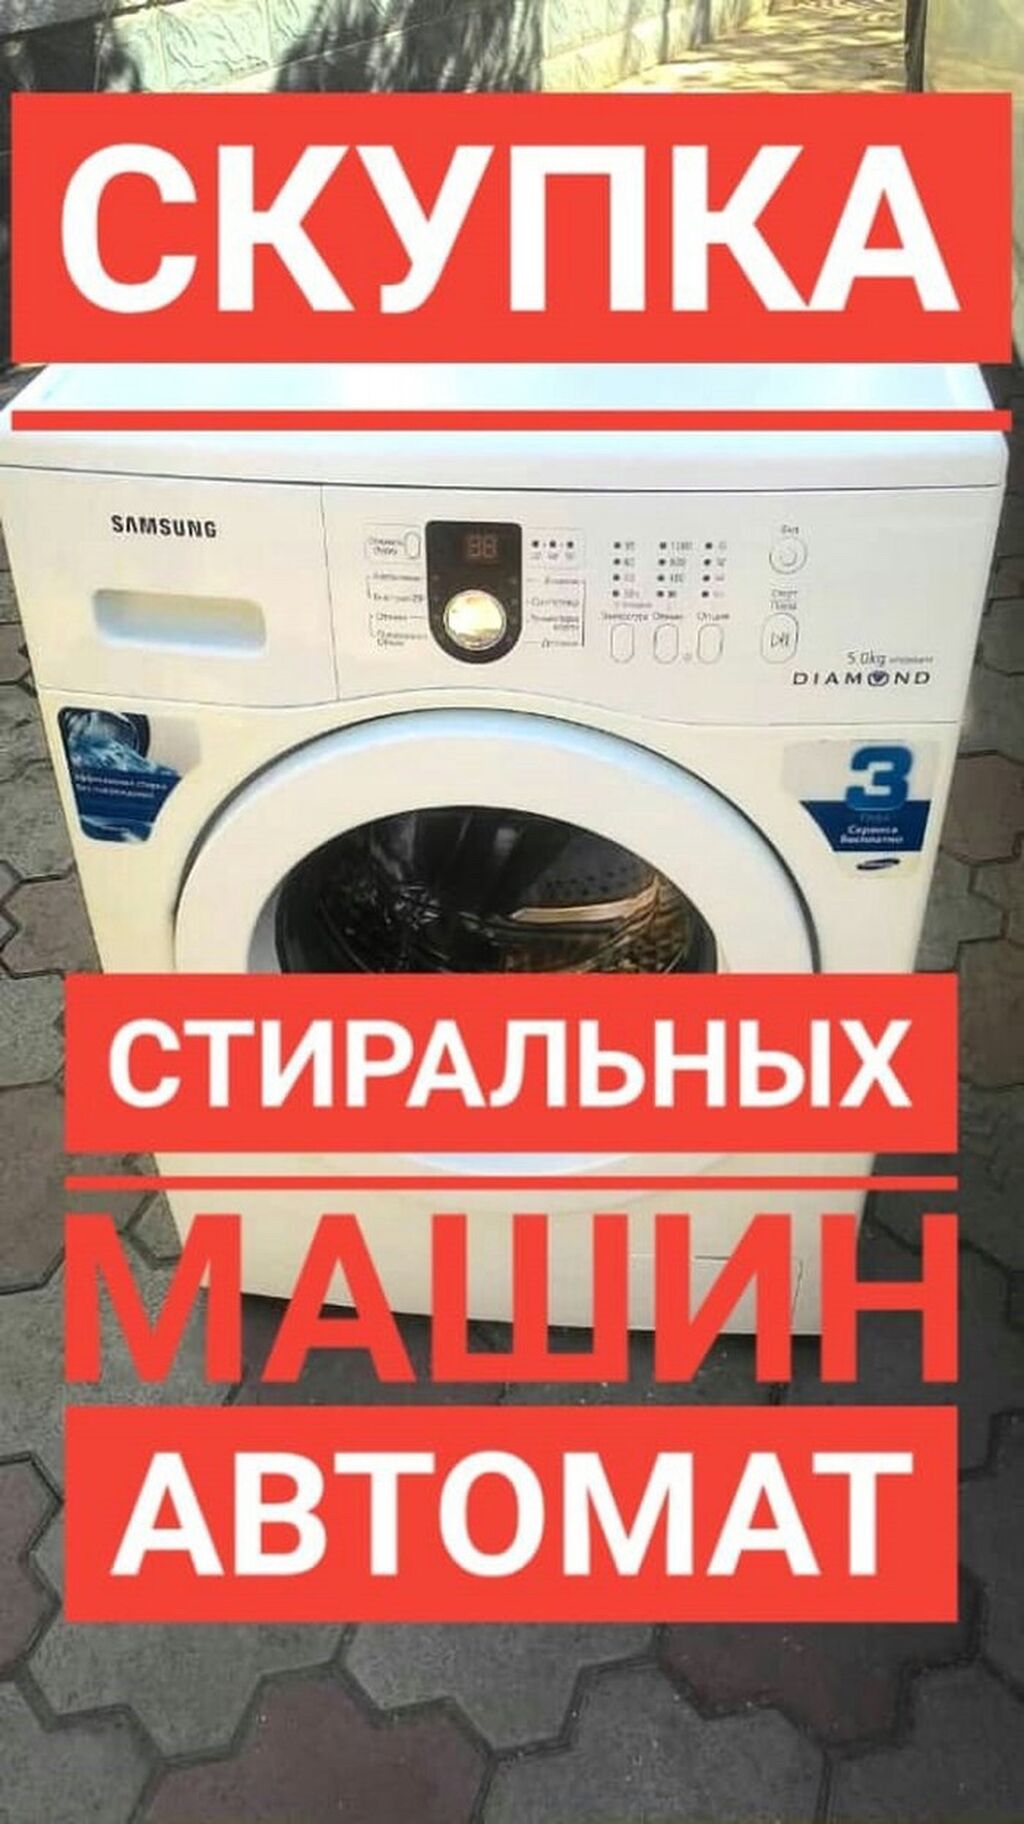 Скупка стиральных машин в новосибирске. Скупаем стиральная машина. Скупка стиральных машин. Выкупаем Стиральные машины. Скупка стиральных машинок.